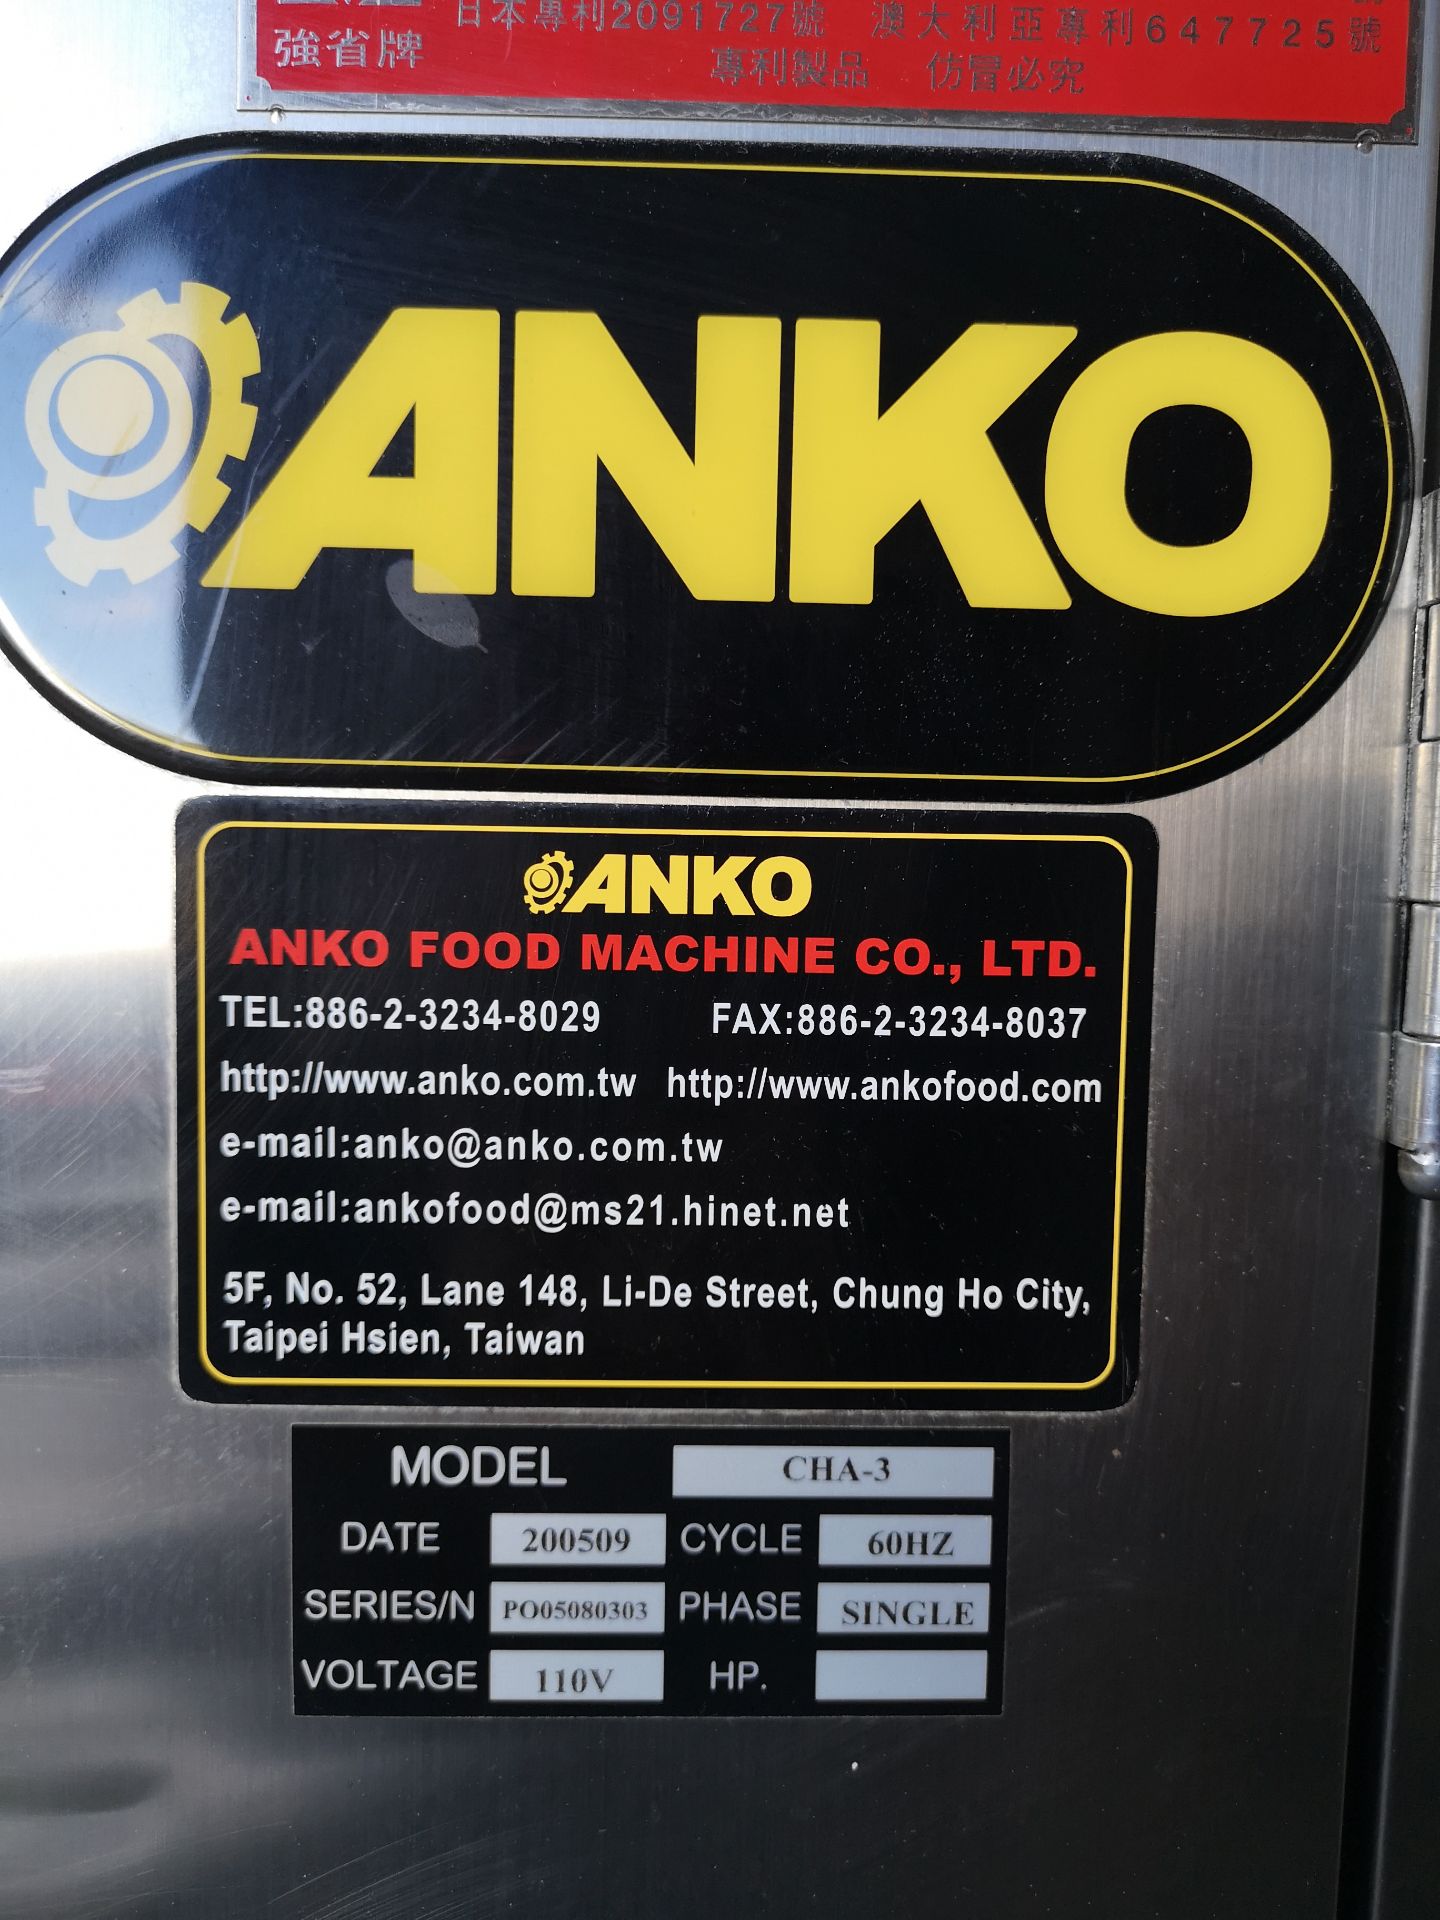 2005 ANKO CHA-3 STEAMER, (26) TRAY, S/N PO05080303, 60HZ, 110V, SINGLE PHASE - Image 5 of 6